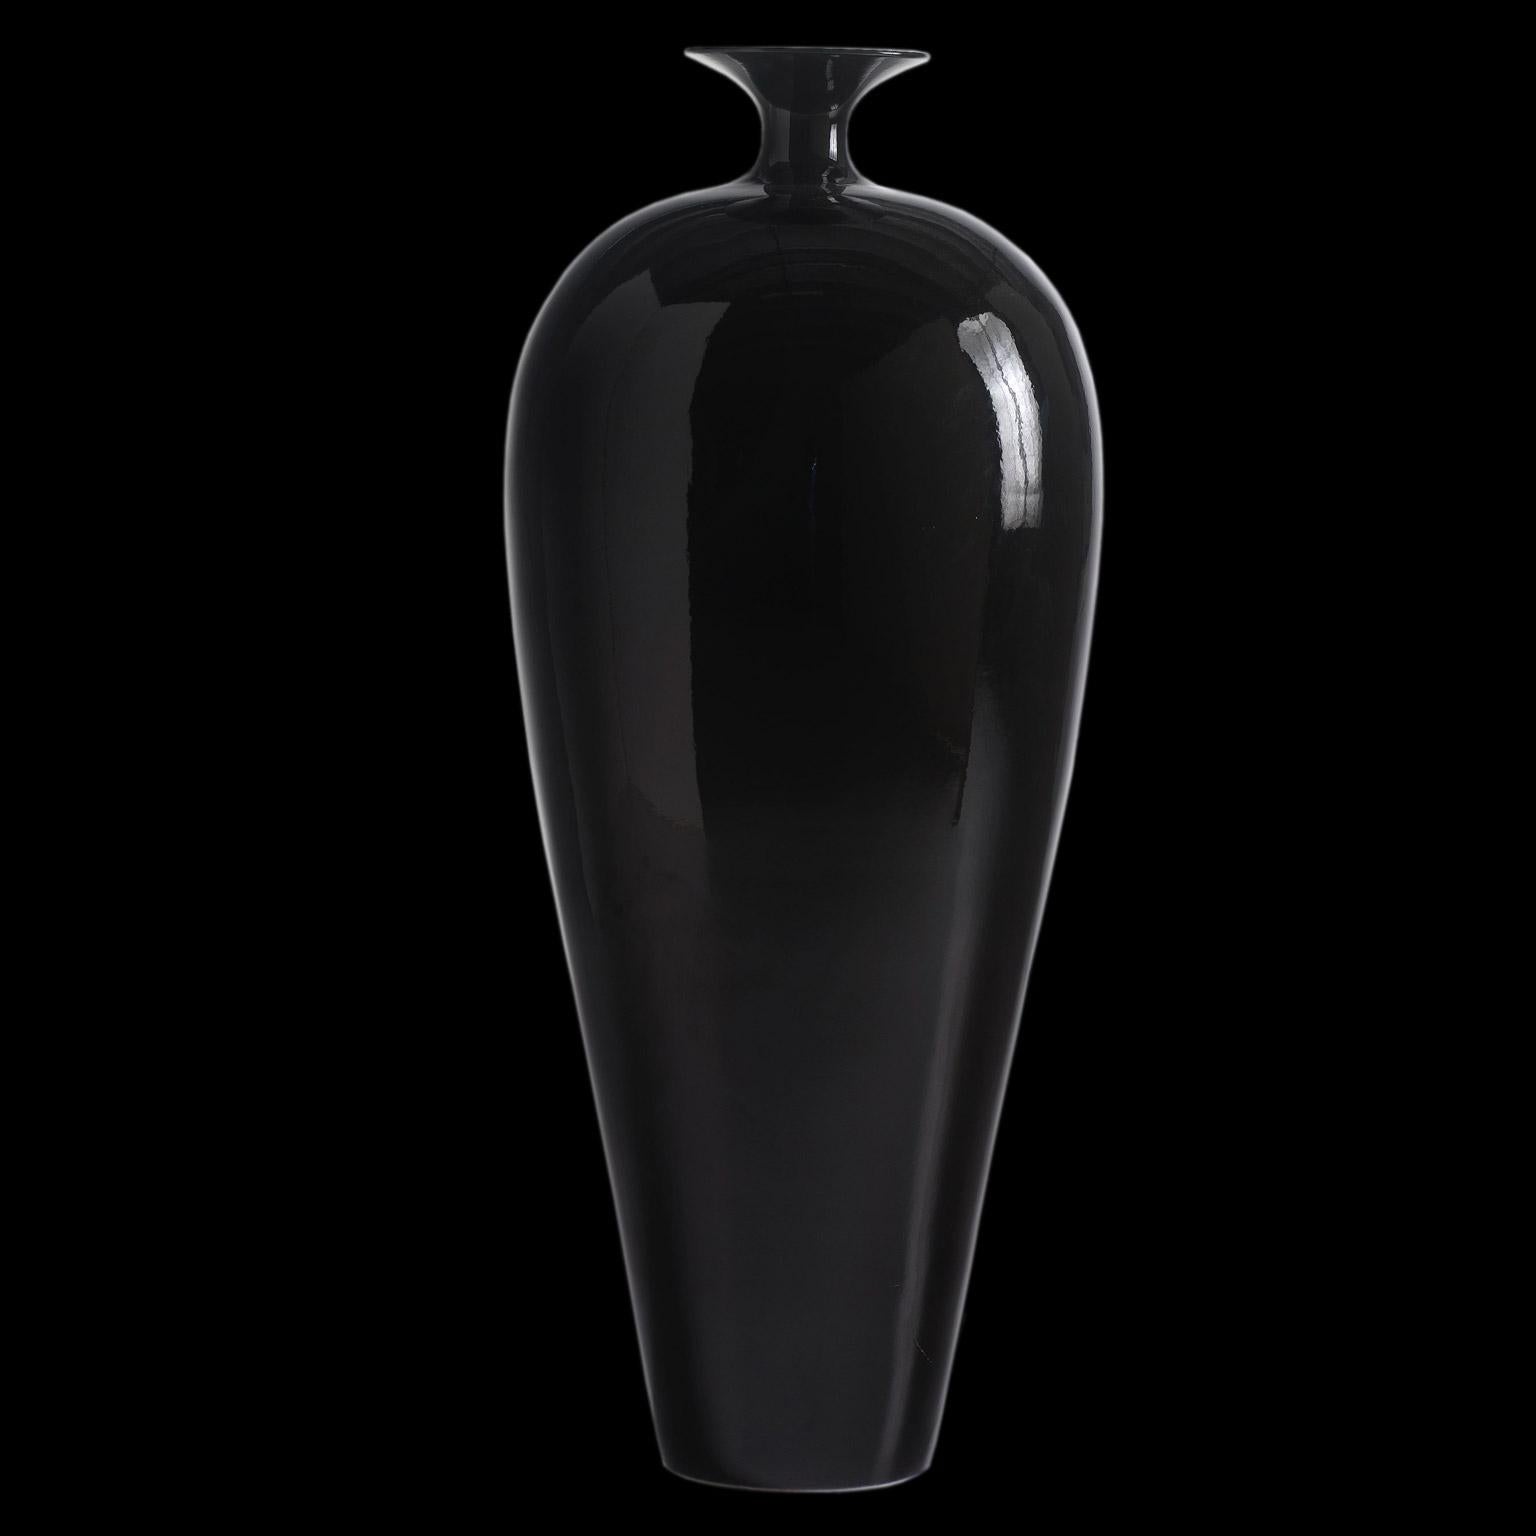 Ceramic vase DOLLY
cod. BD002
finished in black enamel 

Measures: 
H. 125.0 cm.
Dm. 53.0 cm.